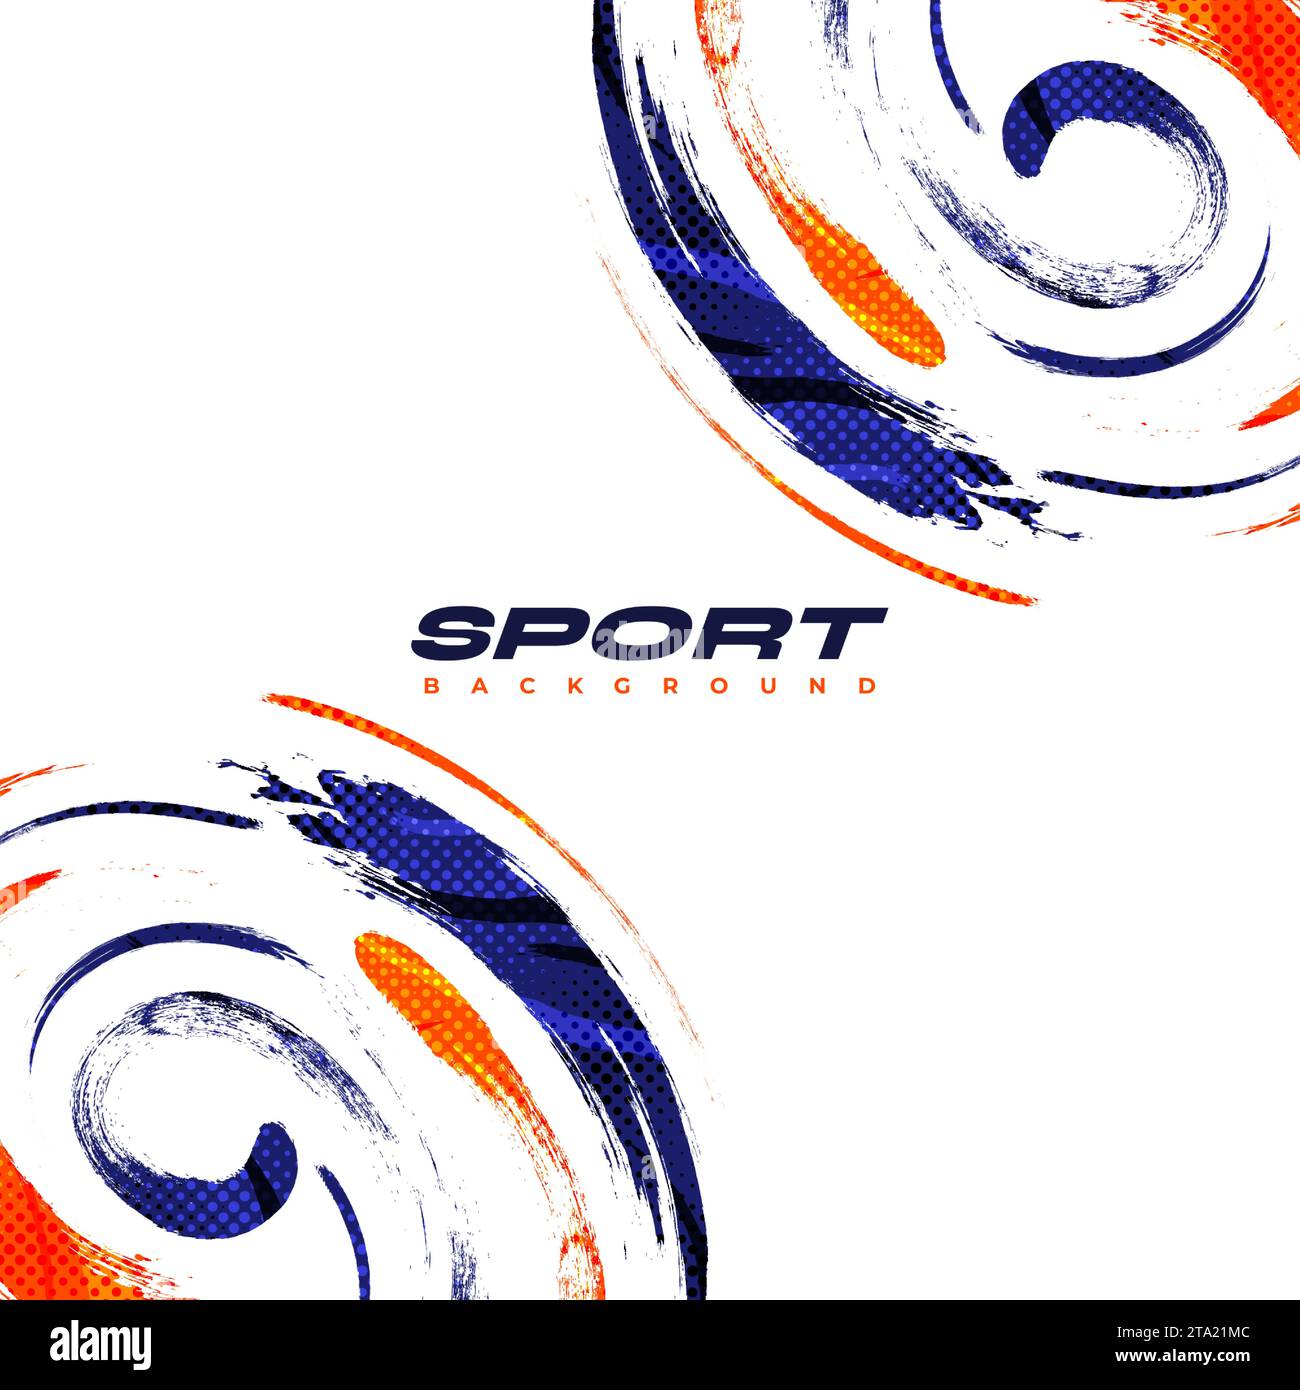 Abstrakter blauer und oranger Pinselhintergrund mit Rastereffekt. Sport-Banner. Abbildung: Pinselstrich. Kratzer- und Texturelemente für die Konstruktion Stock Vektor